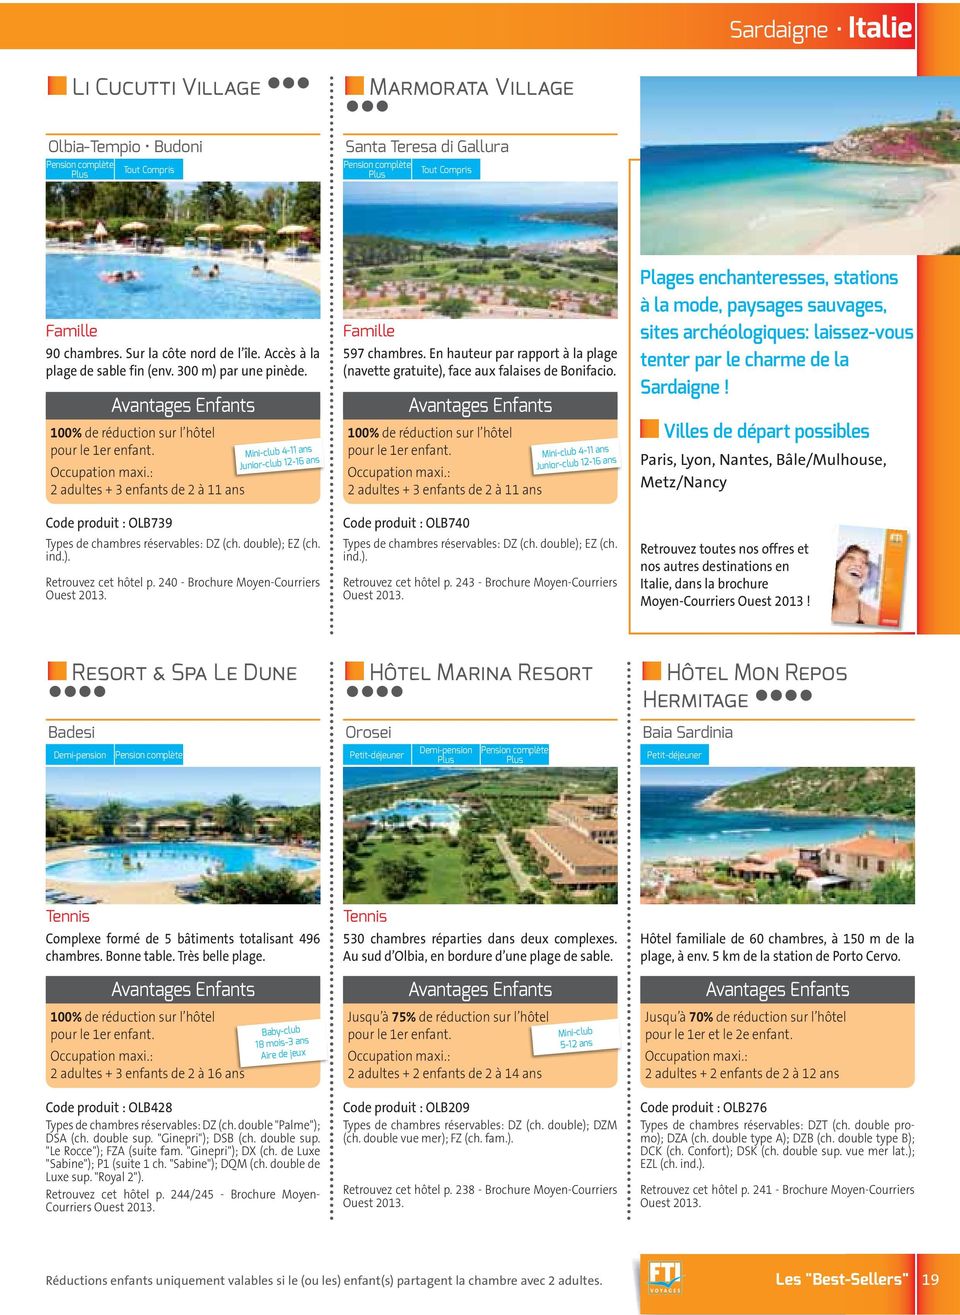 double); EZ (ch. ind.). Retrouvez cet hôtel p. 240 - Brochure Moyen-Courriers 597 chambres. En hauteur par rapport à la plage (navette gratuite), face aux falaises de Bonifacio.